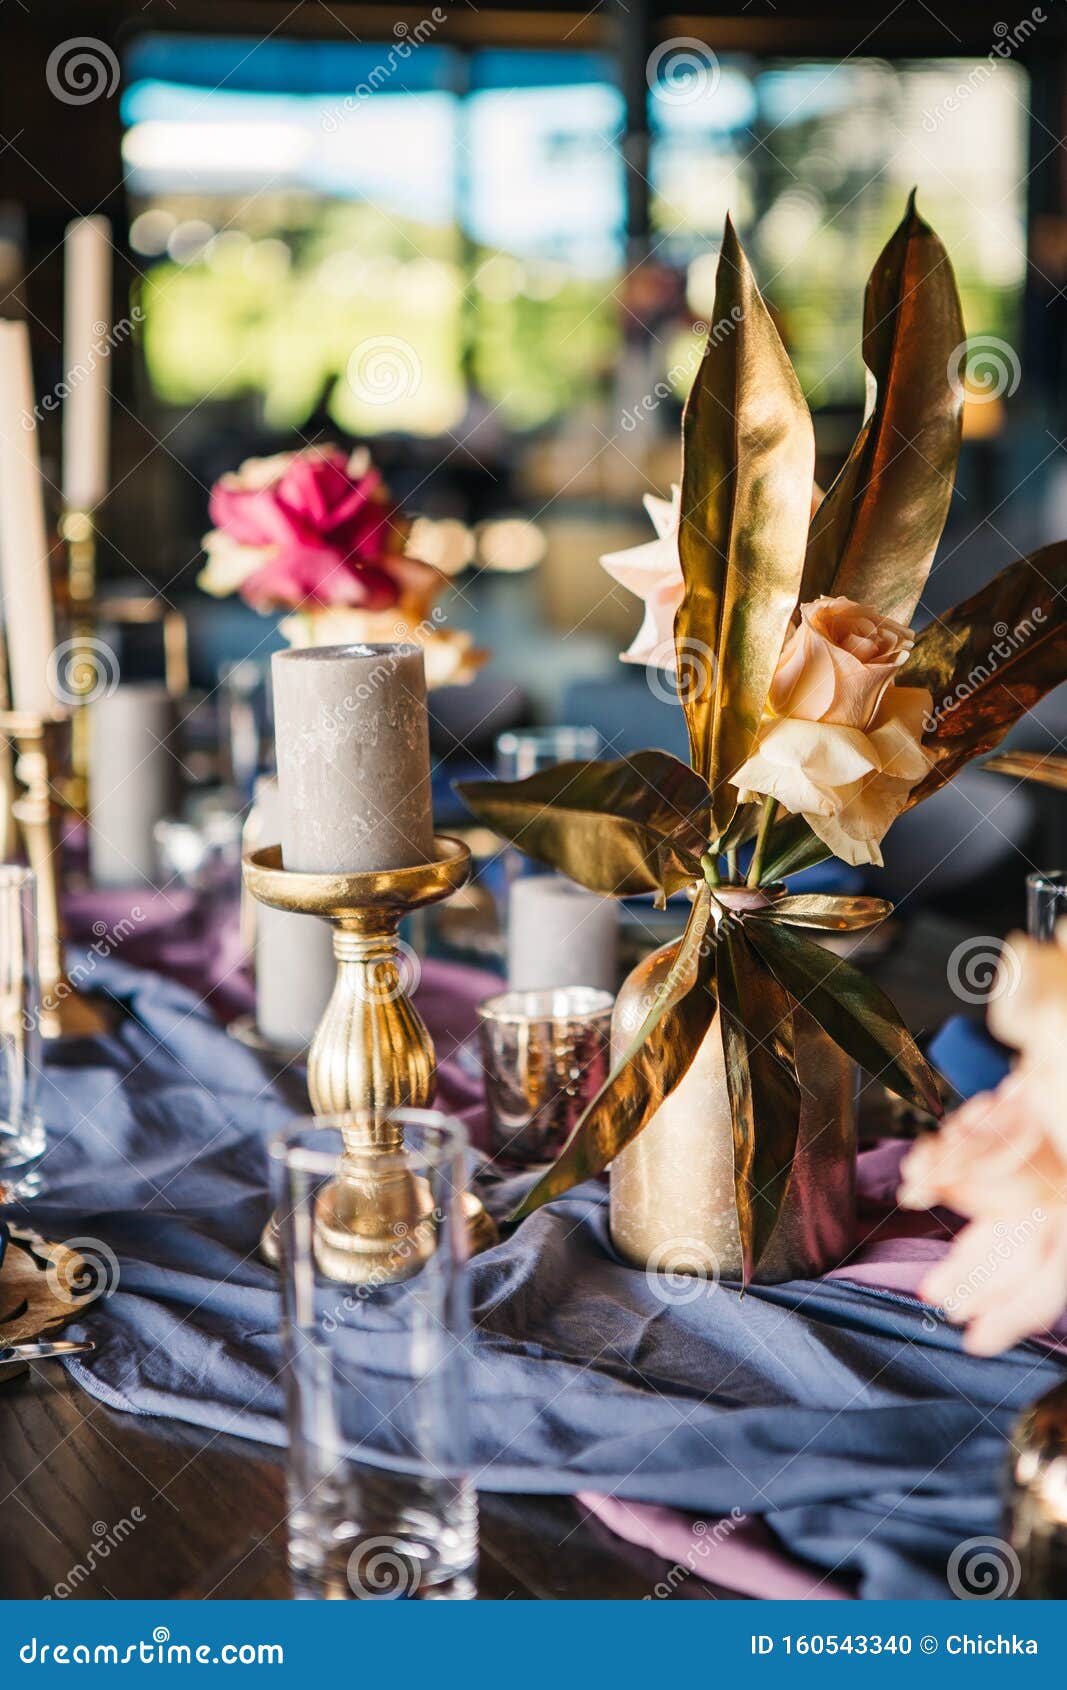 Свадебные свечи — лучший декор для торжества